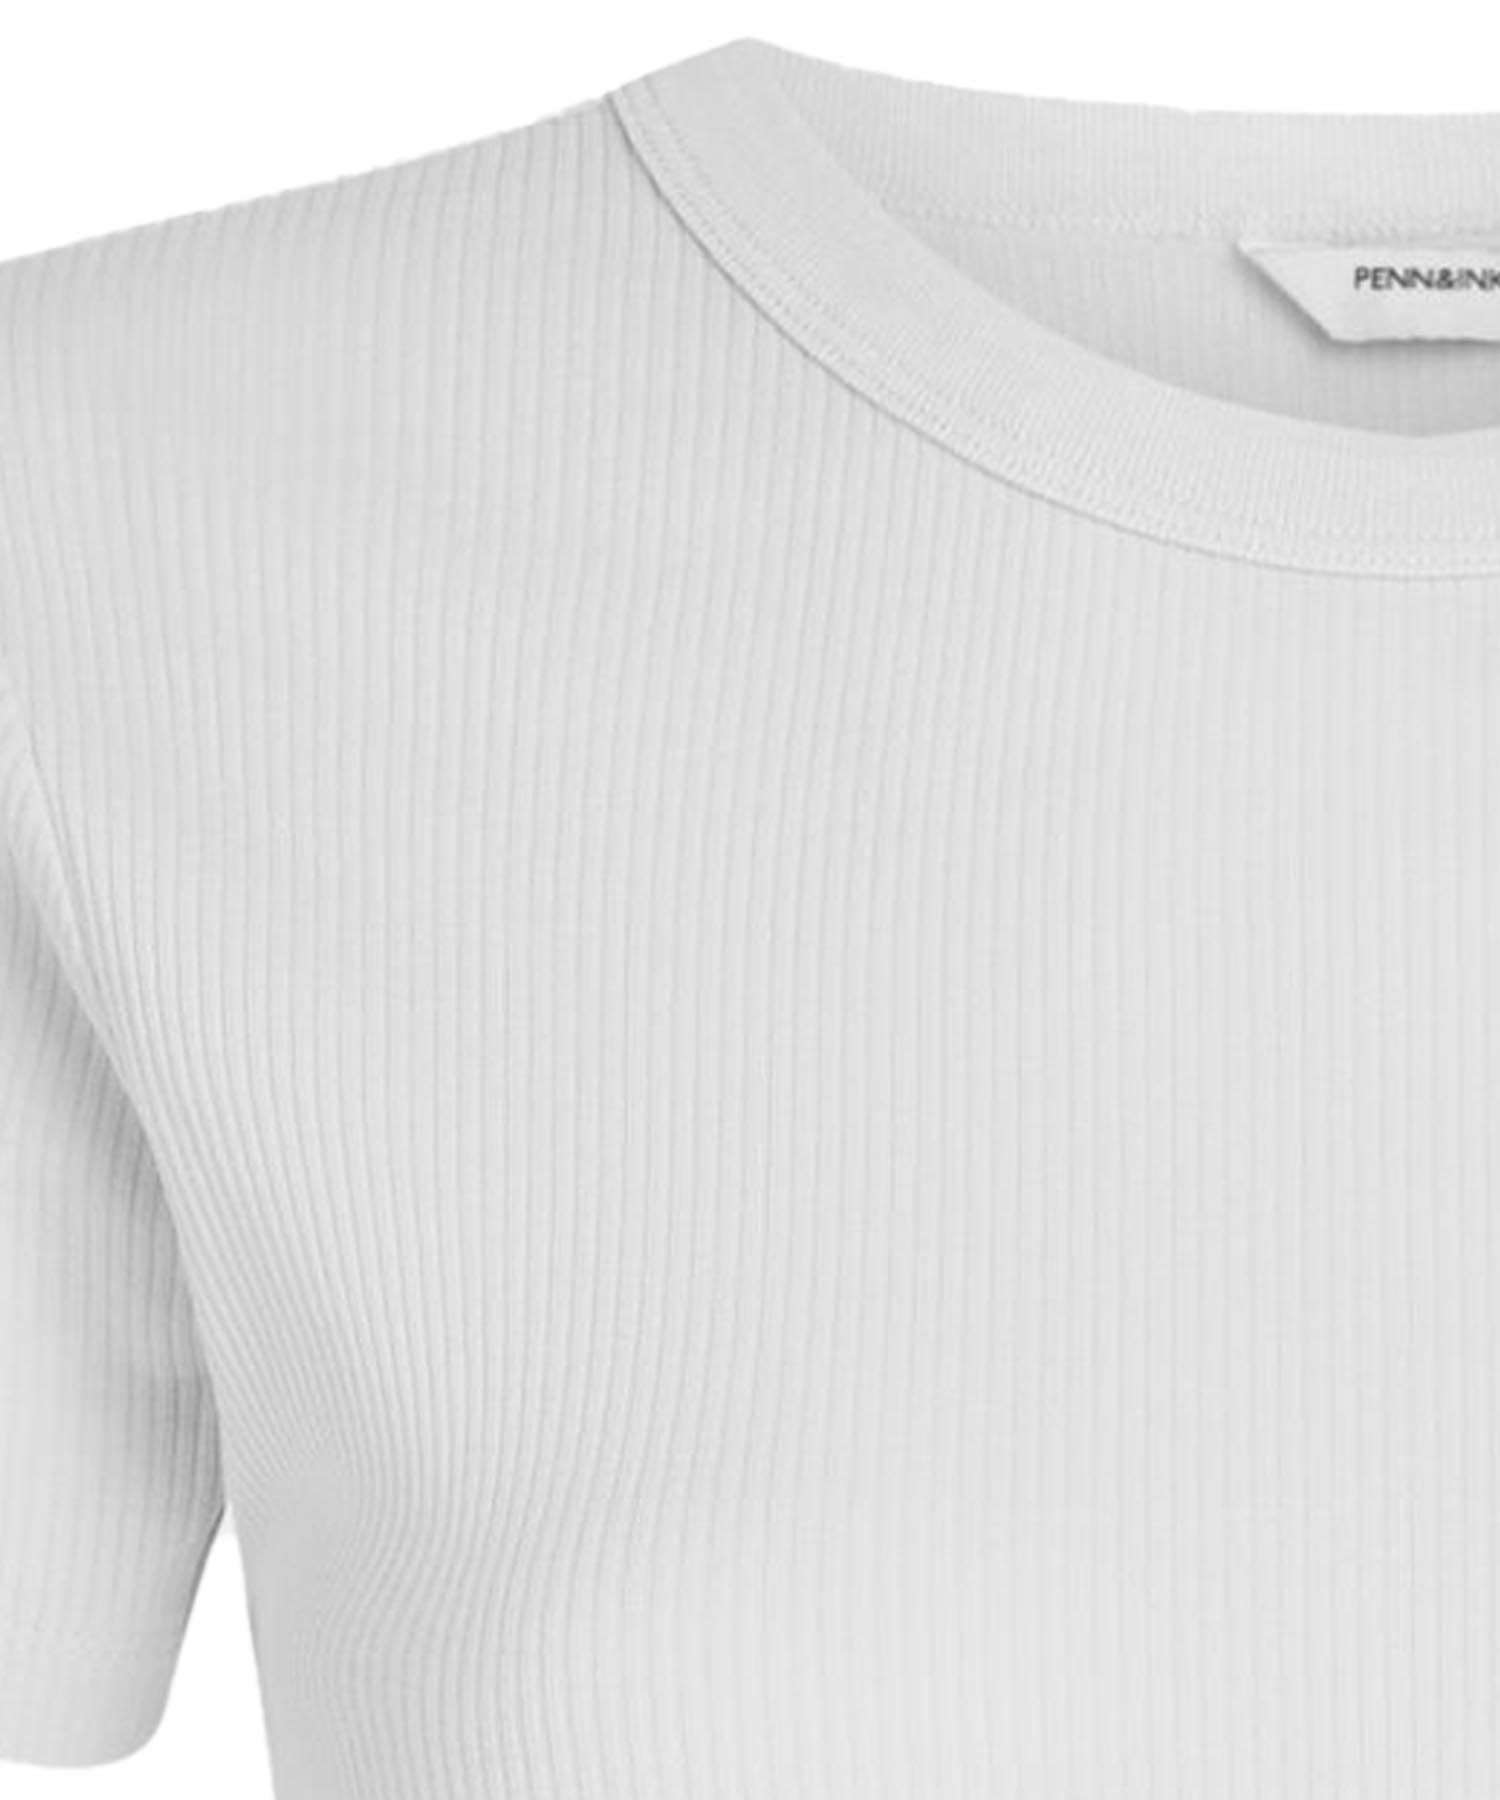 Penn & Ink T-Shirt in Rippenstruktur aus Baumwolle